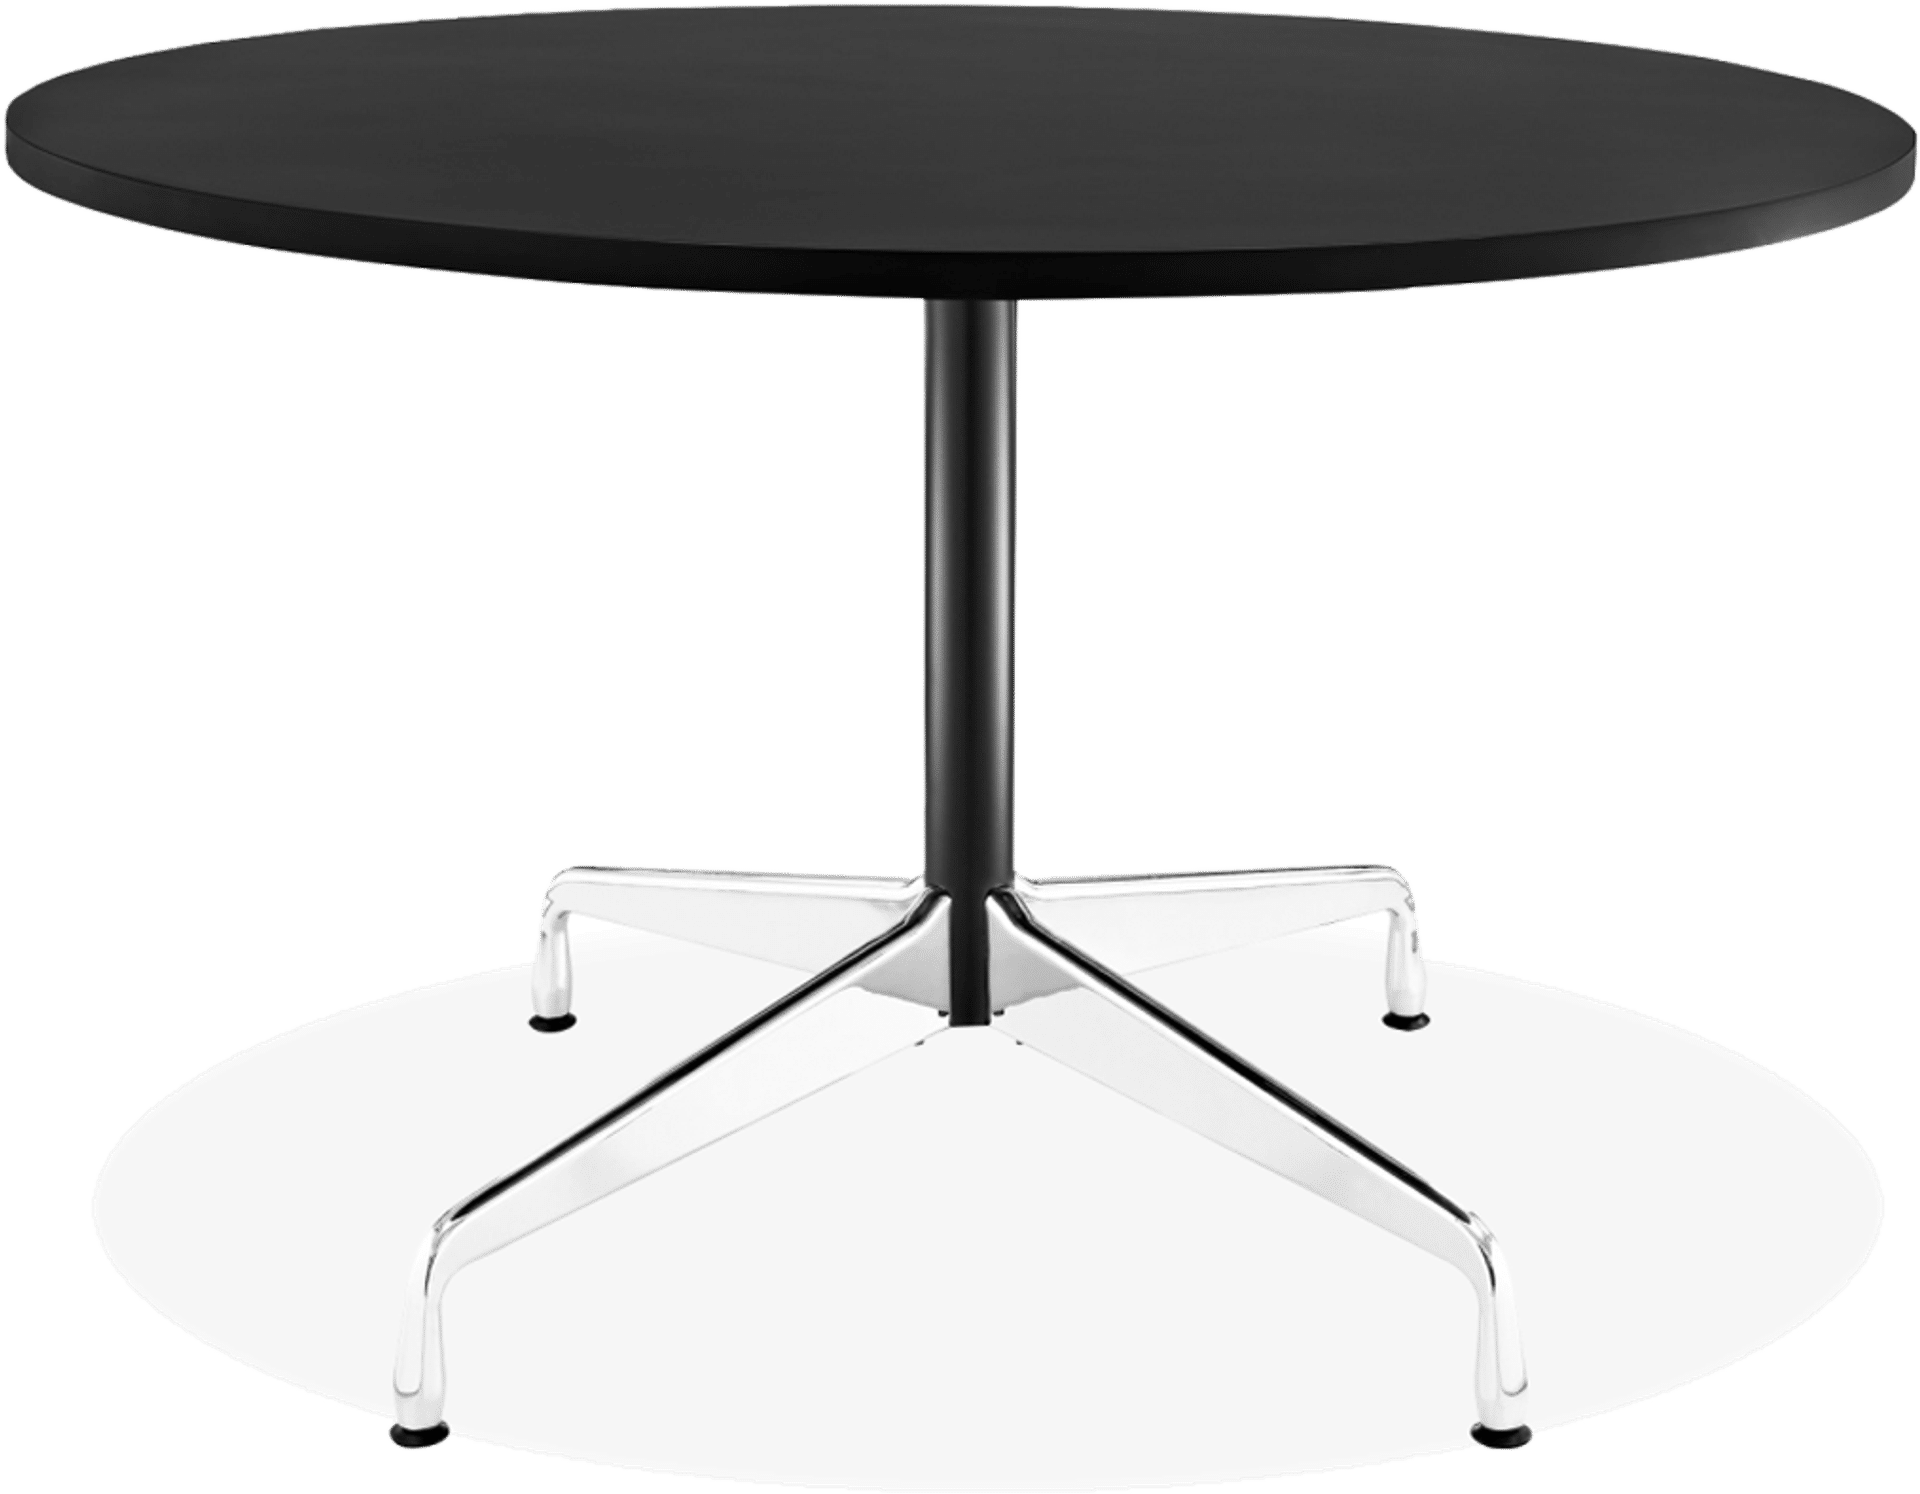 Table de conférence ronde style Eames Black/105 CM image.